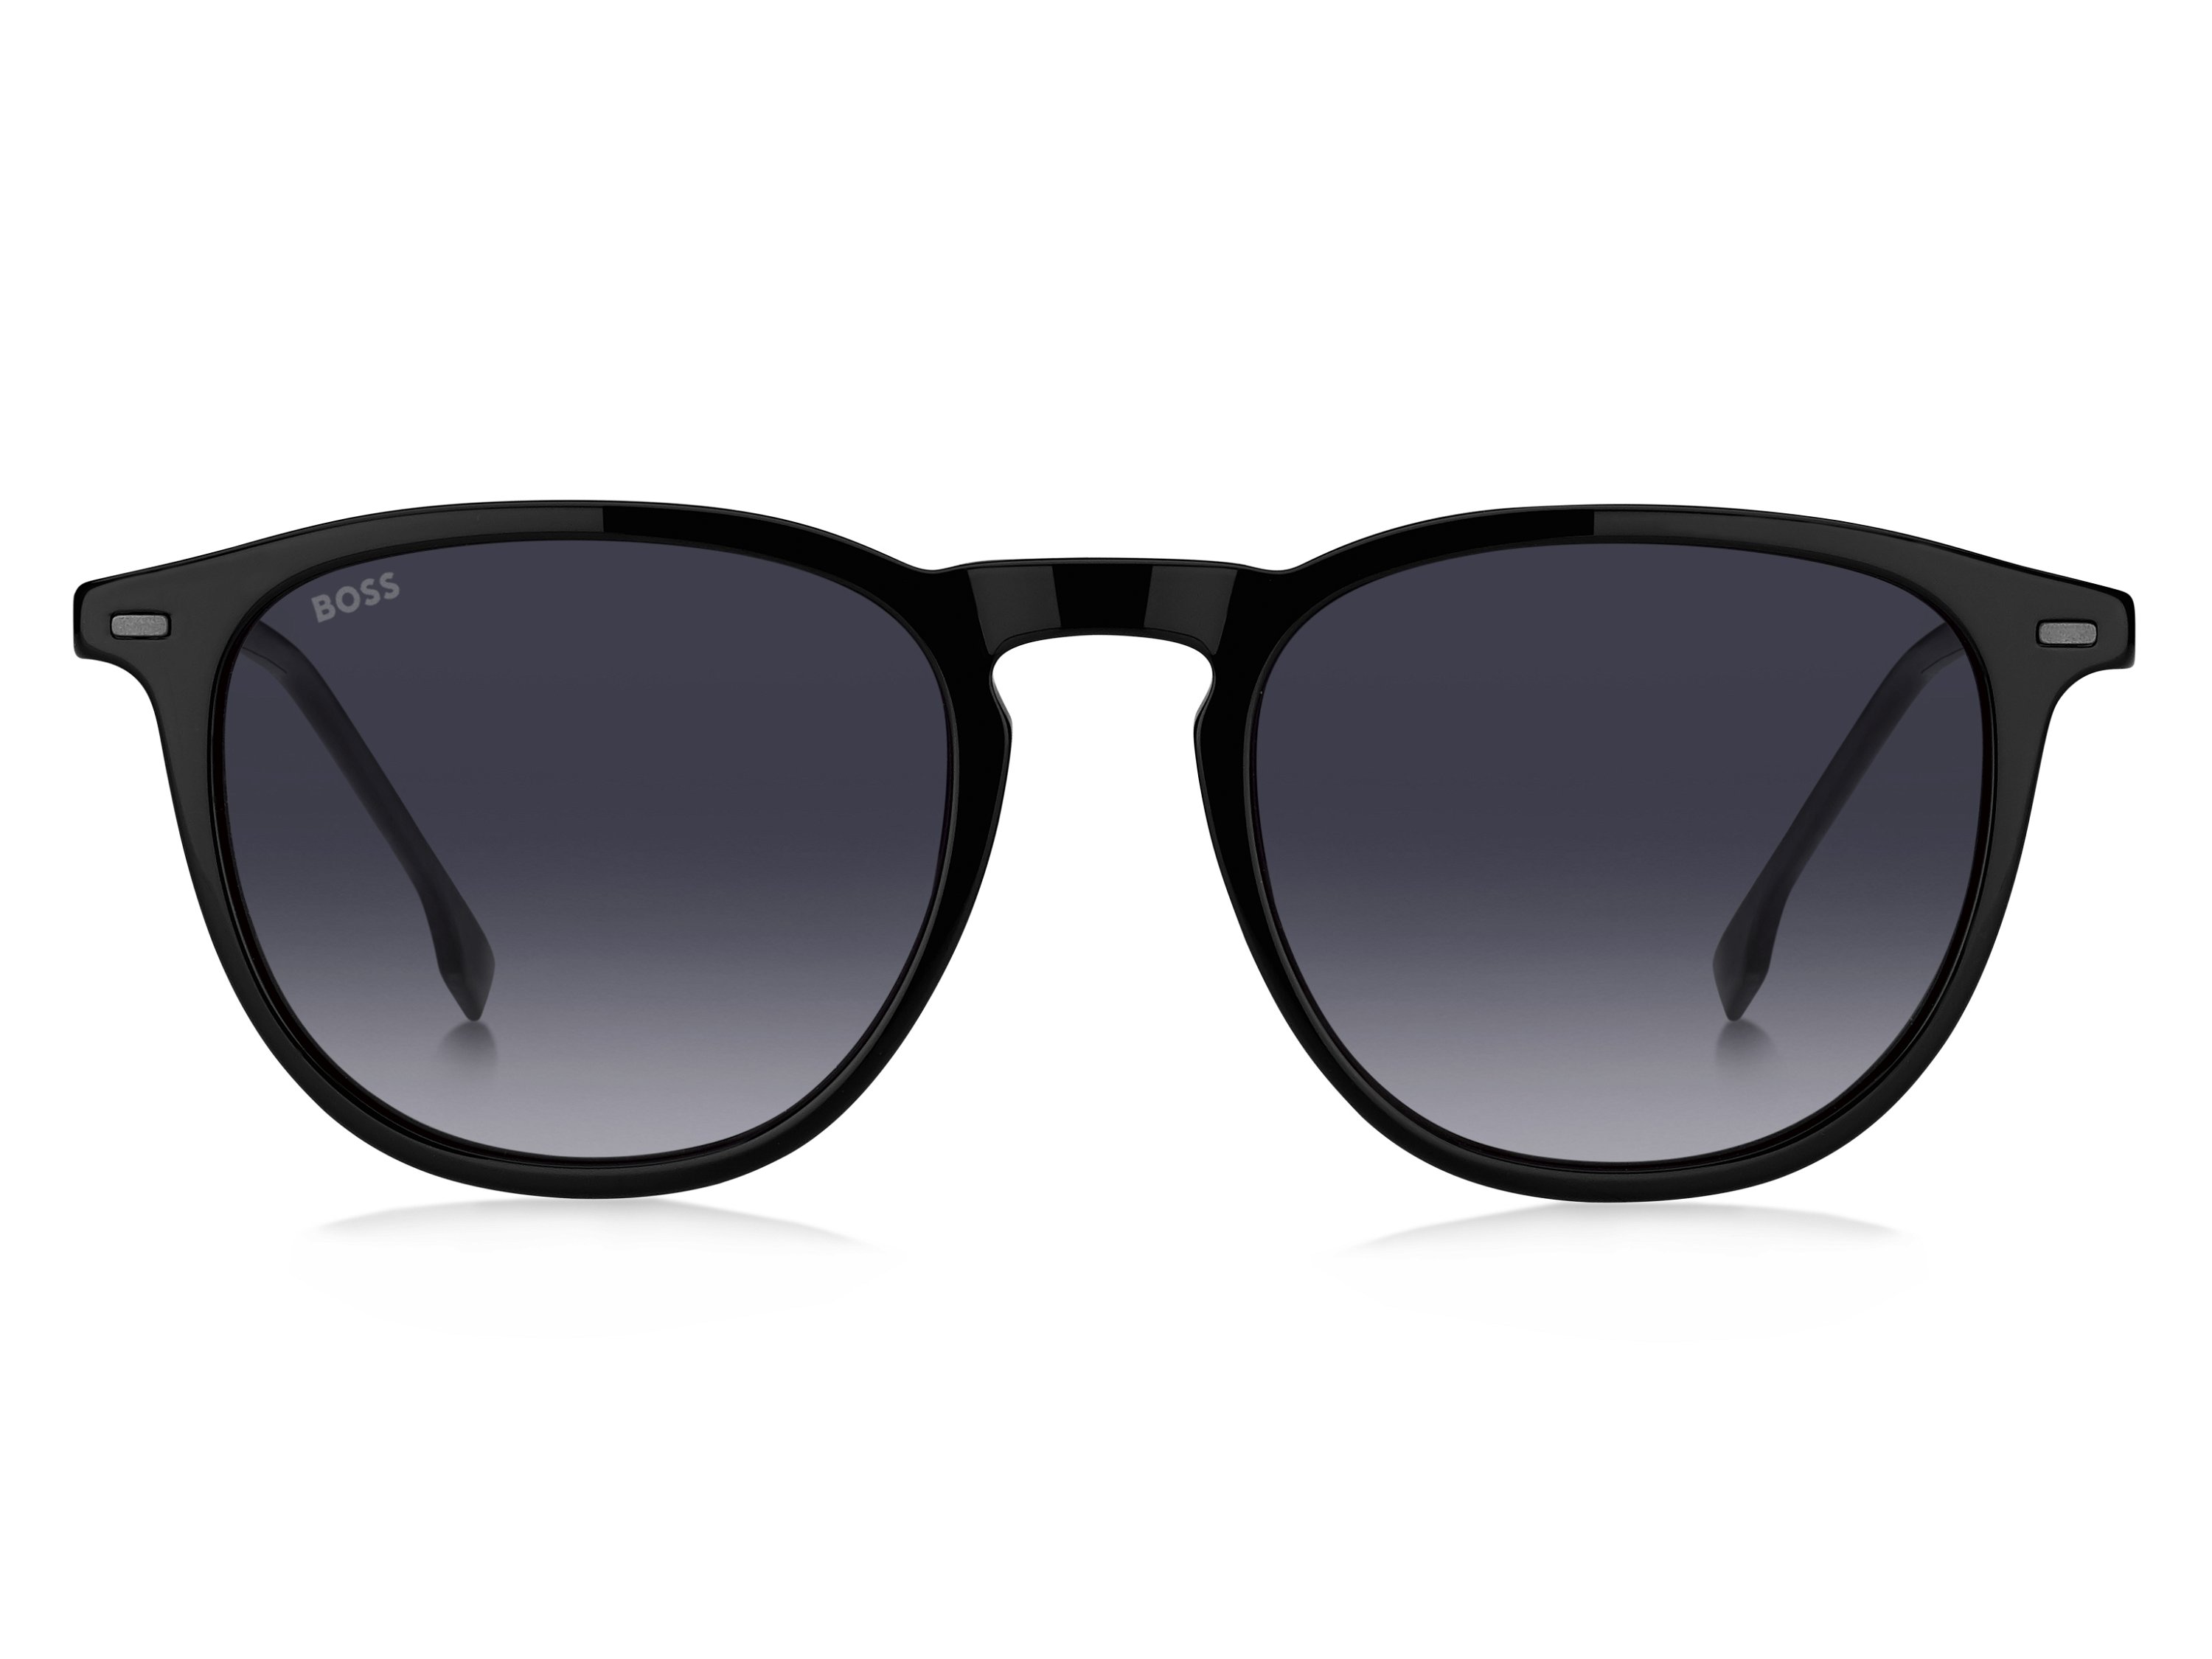 Das Bild zeigt die Sonnenbrille BOSS1639S ANS von der Marke BOSS in Schwarz.